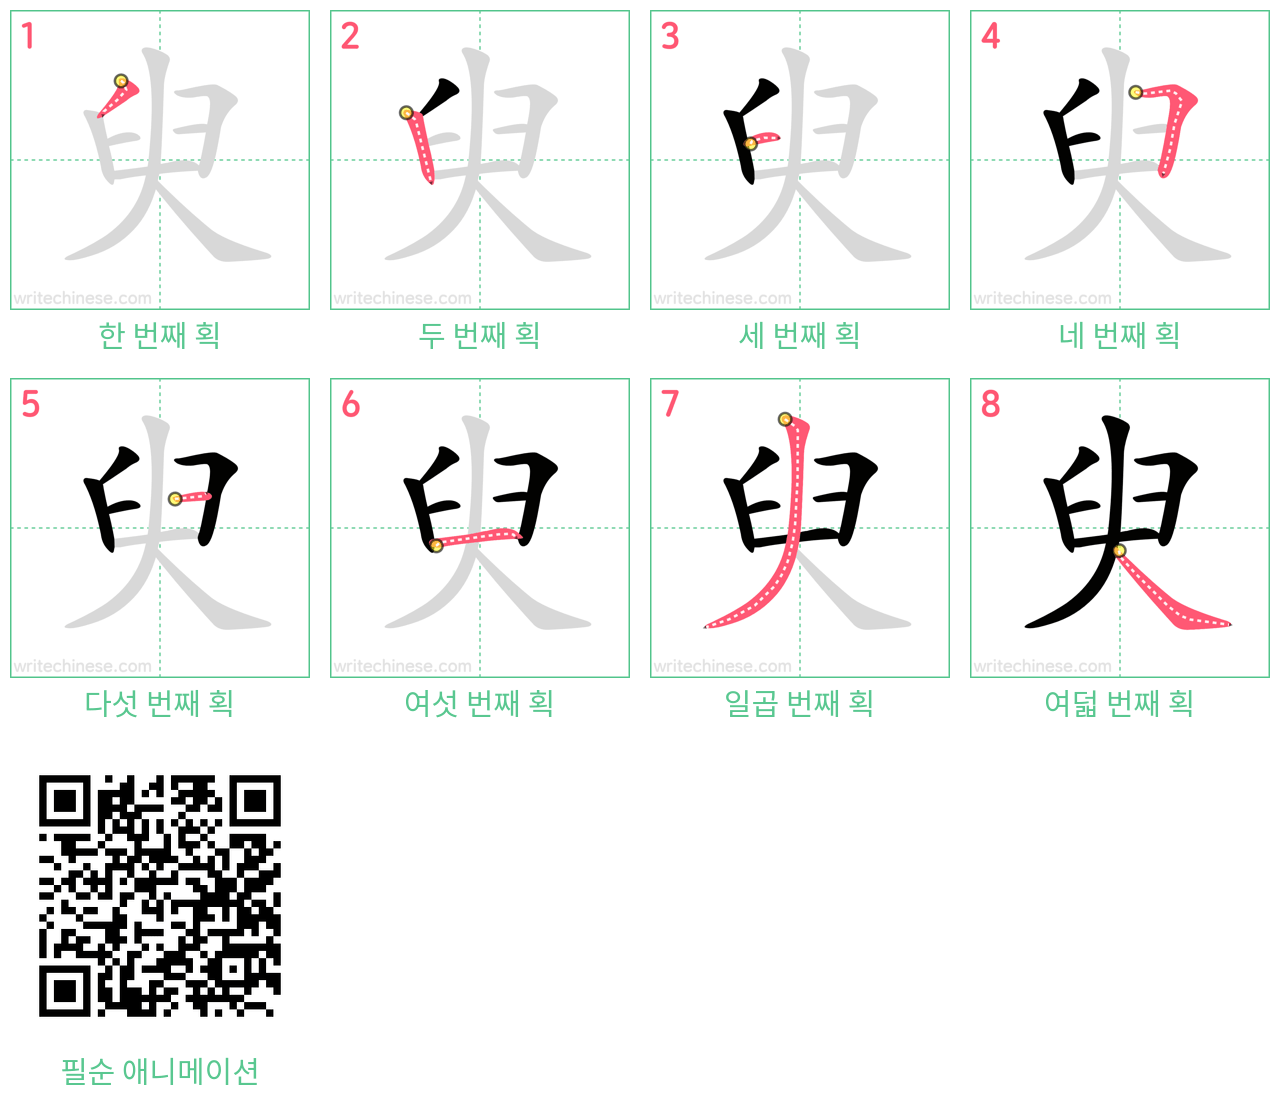 臾 step-by-step stroke order diagrams